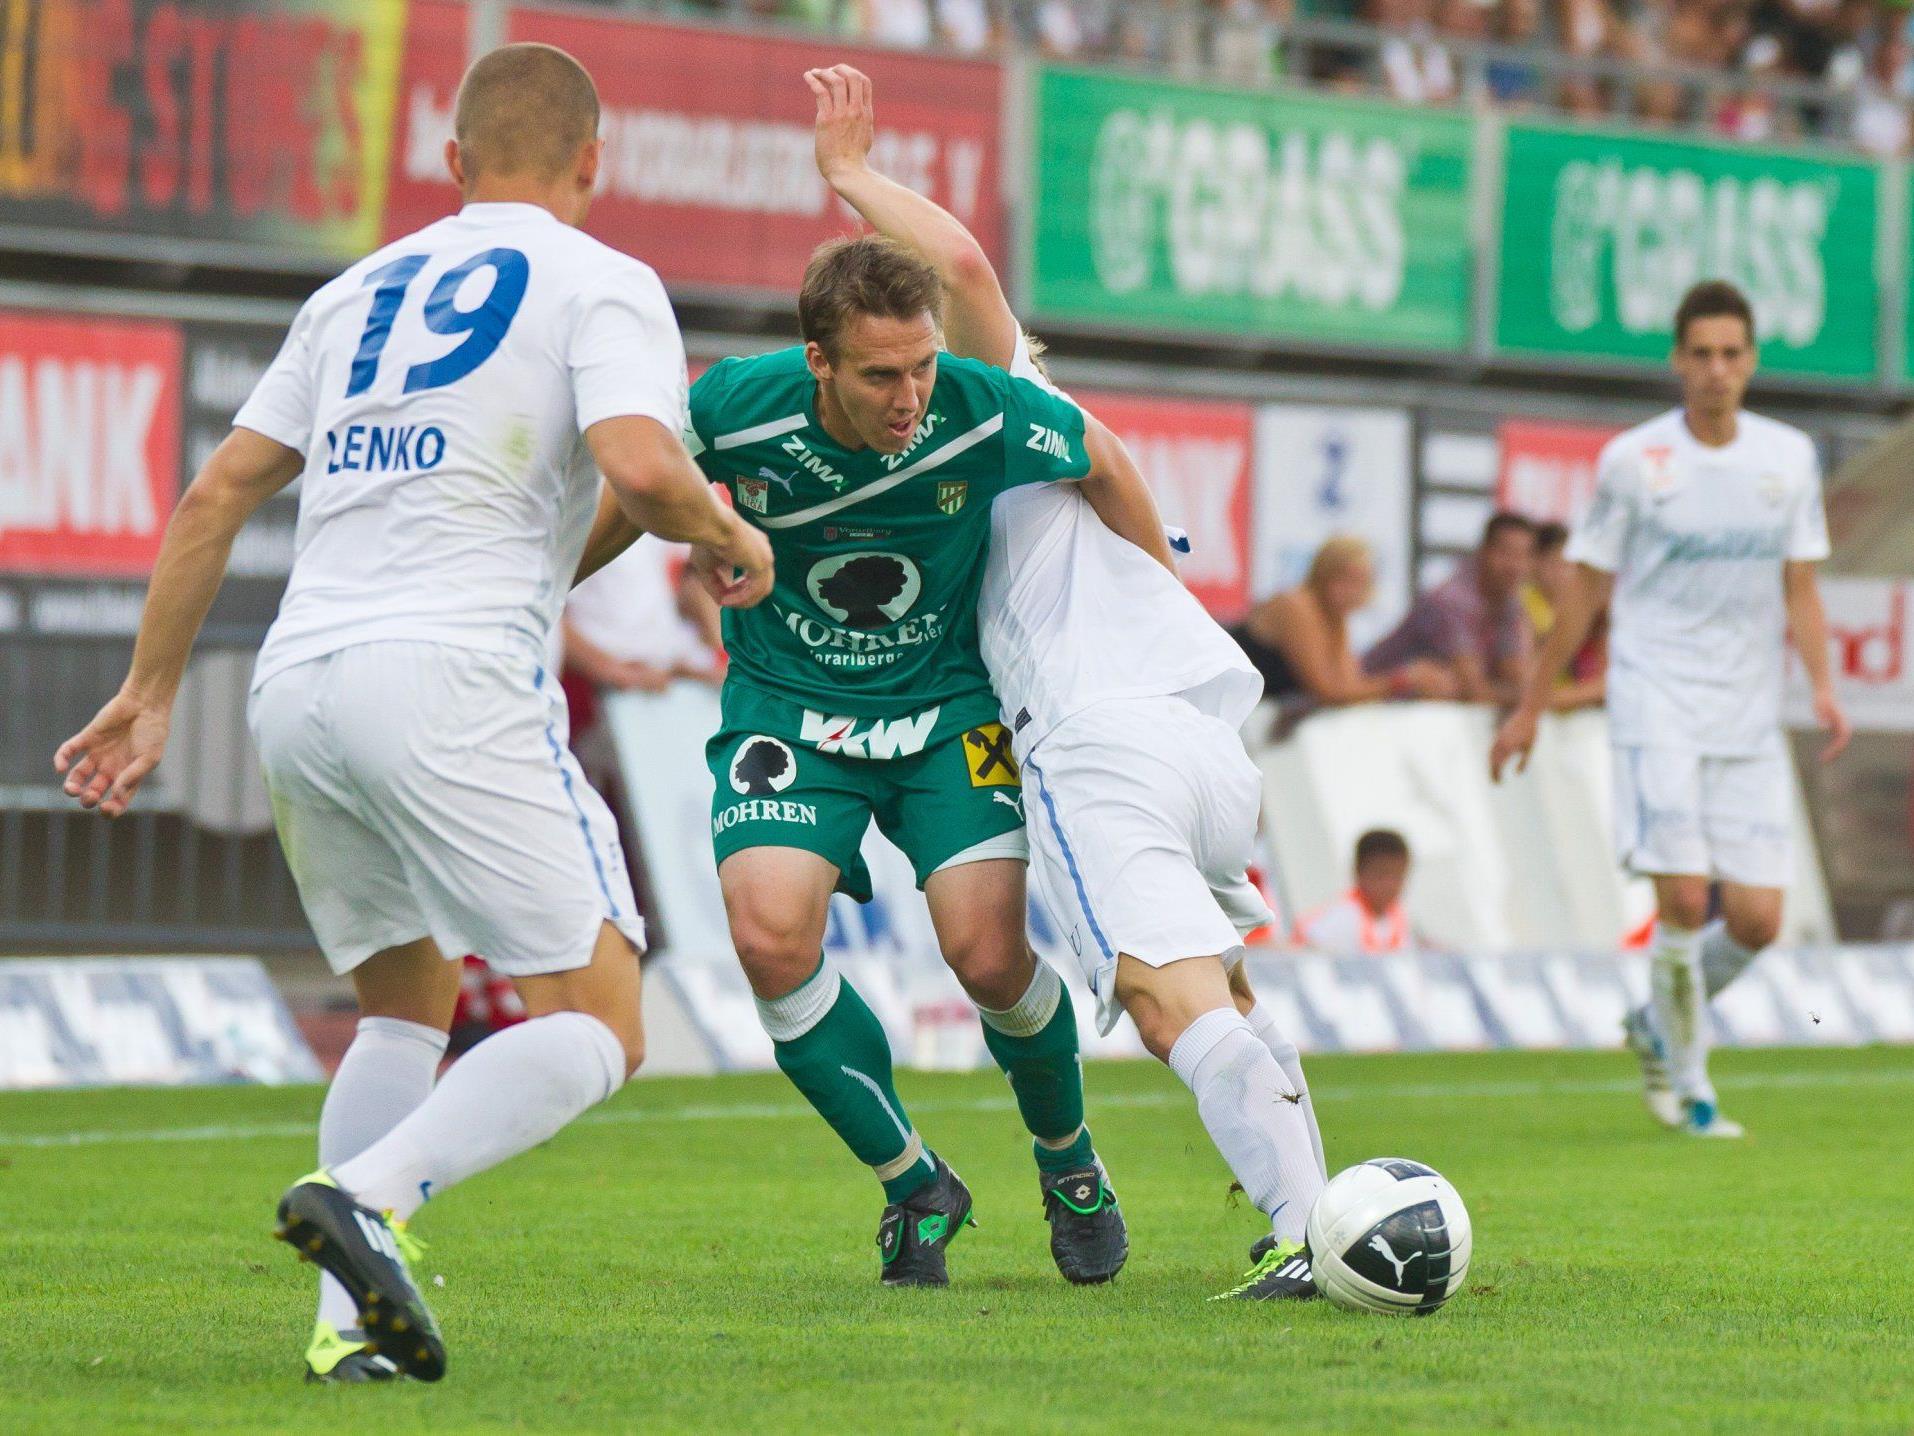 Austria Lustenaus Abwehrchef Christoph Stückler absolvierte im Jahr 2012 alle Spiele für seinen Klub und möchte unbedingt weiter im Titelkampf mitmischen.